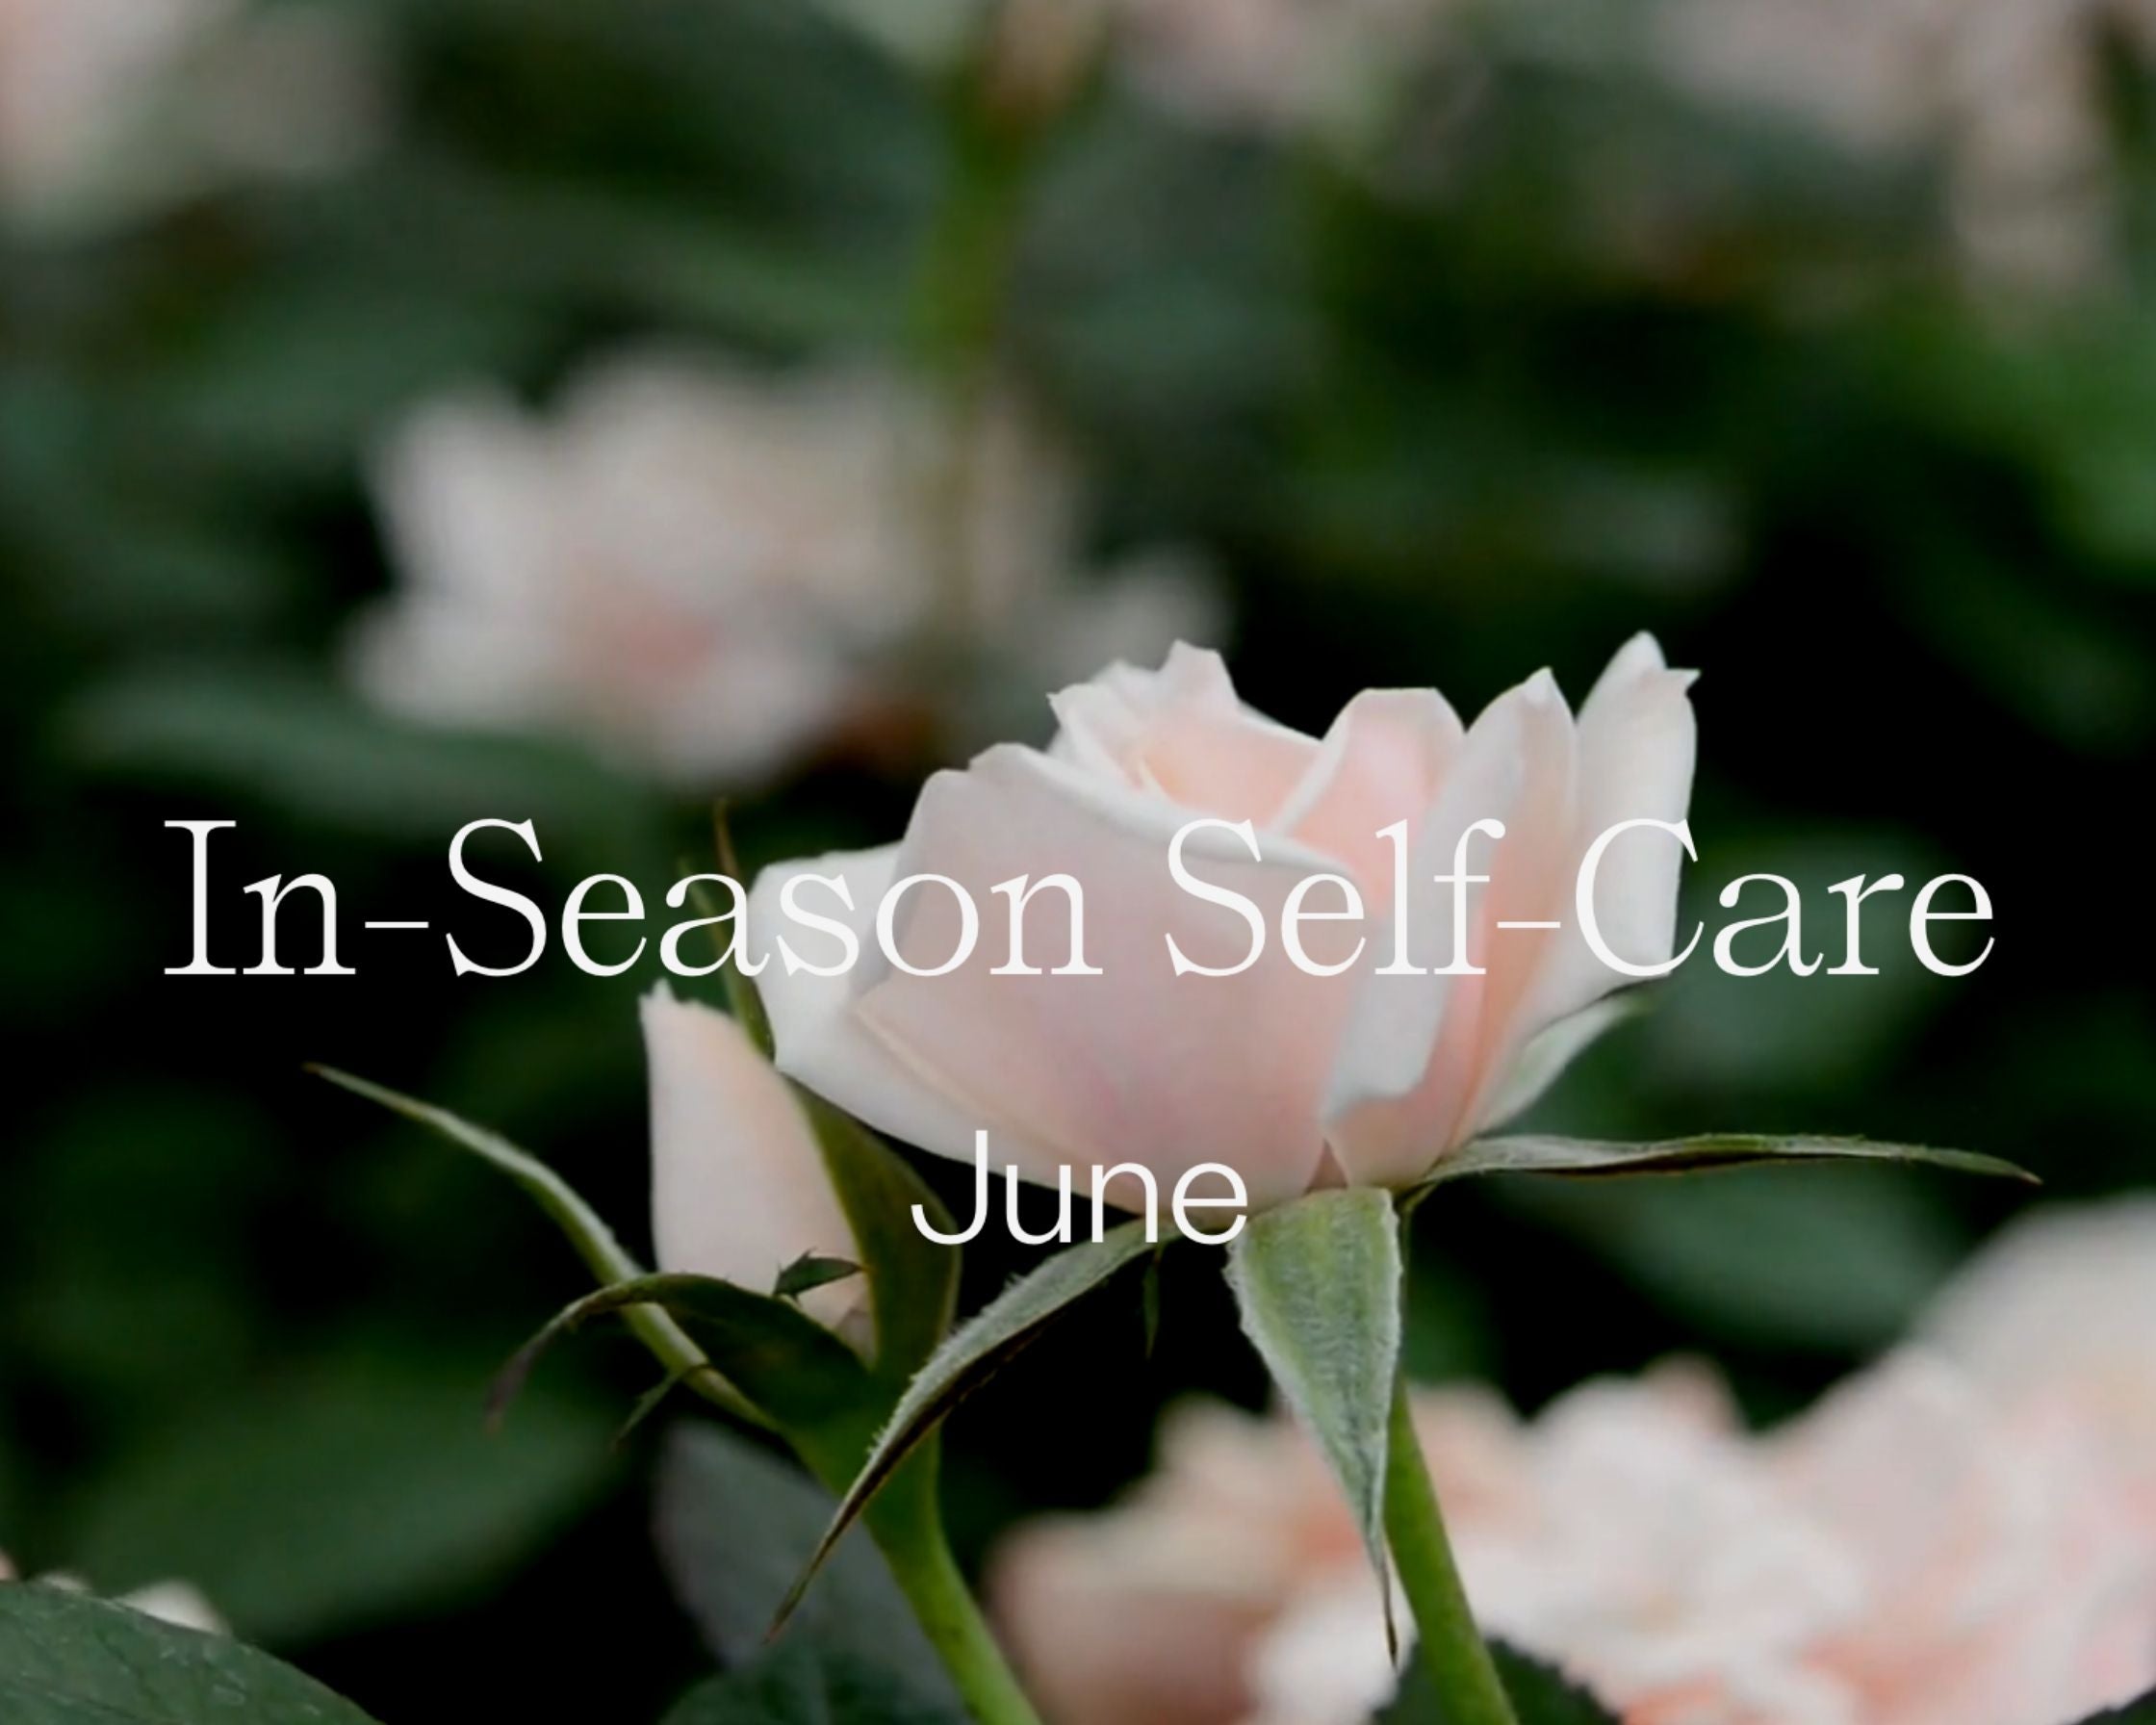 In Season Self-Care: June